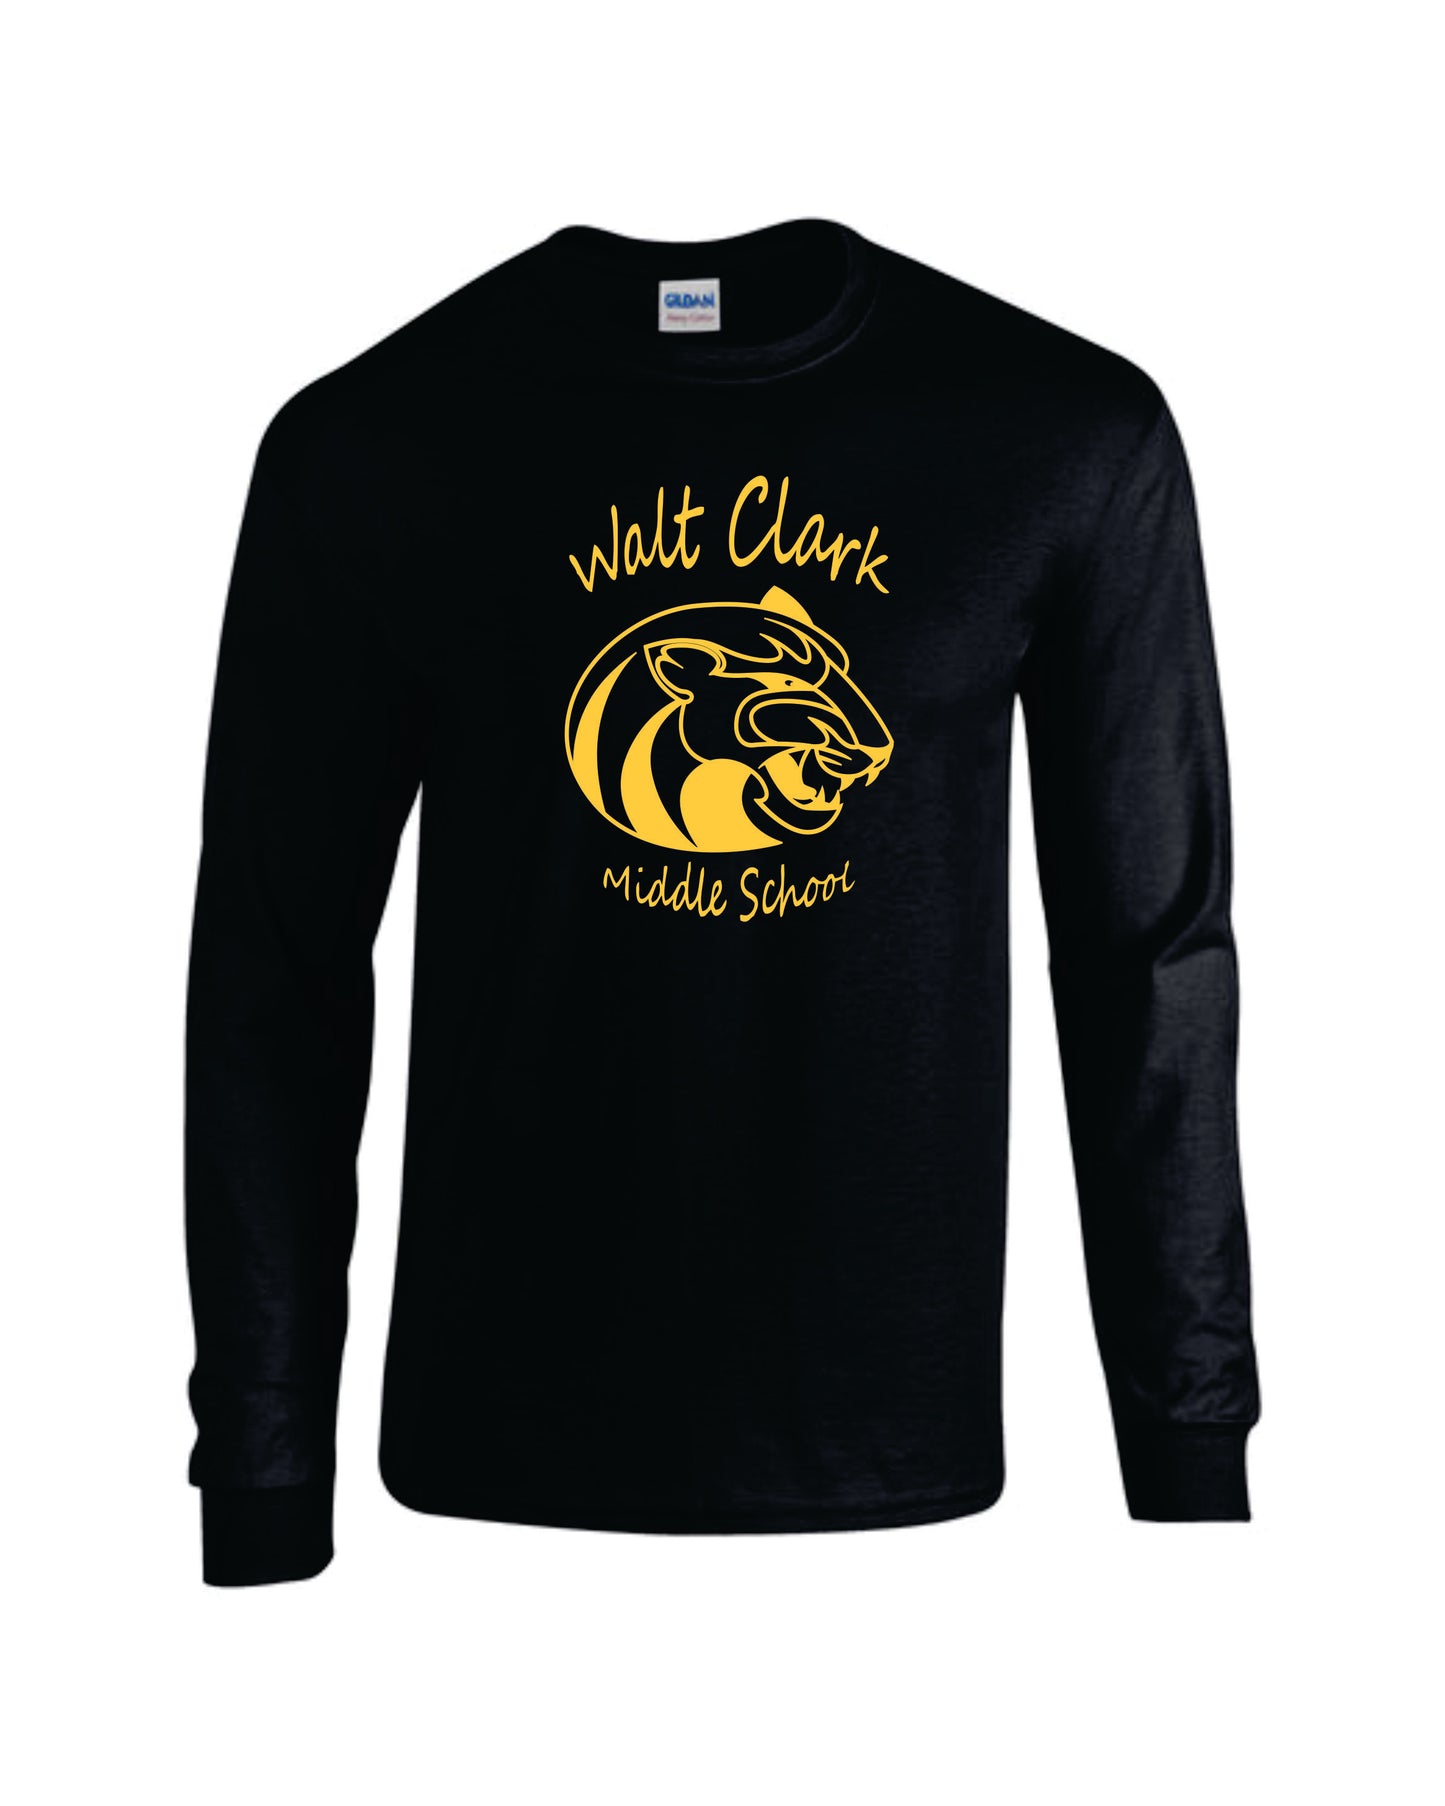 WCMS Walt Clark Middle School logo